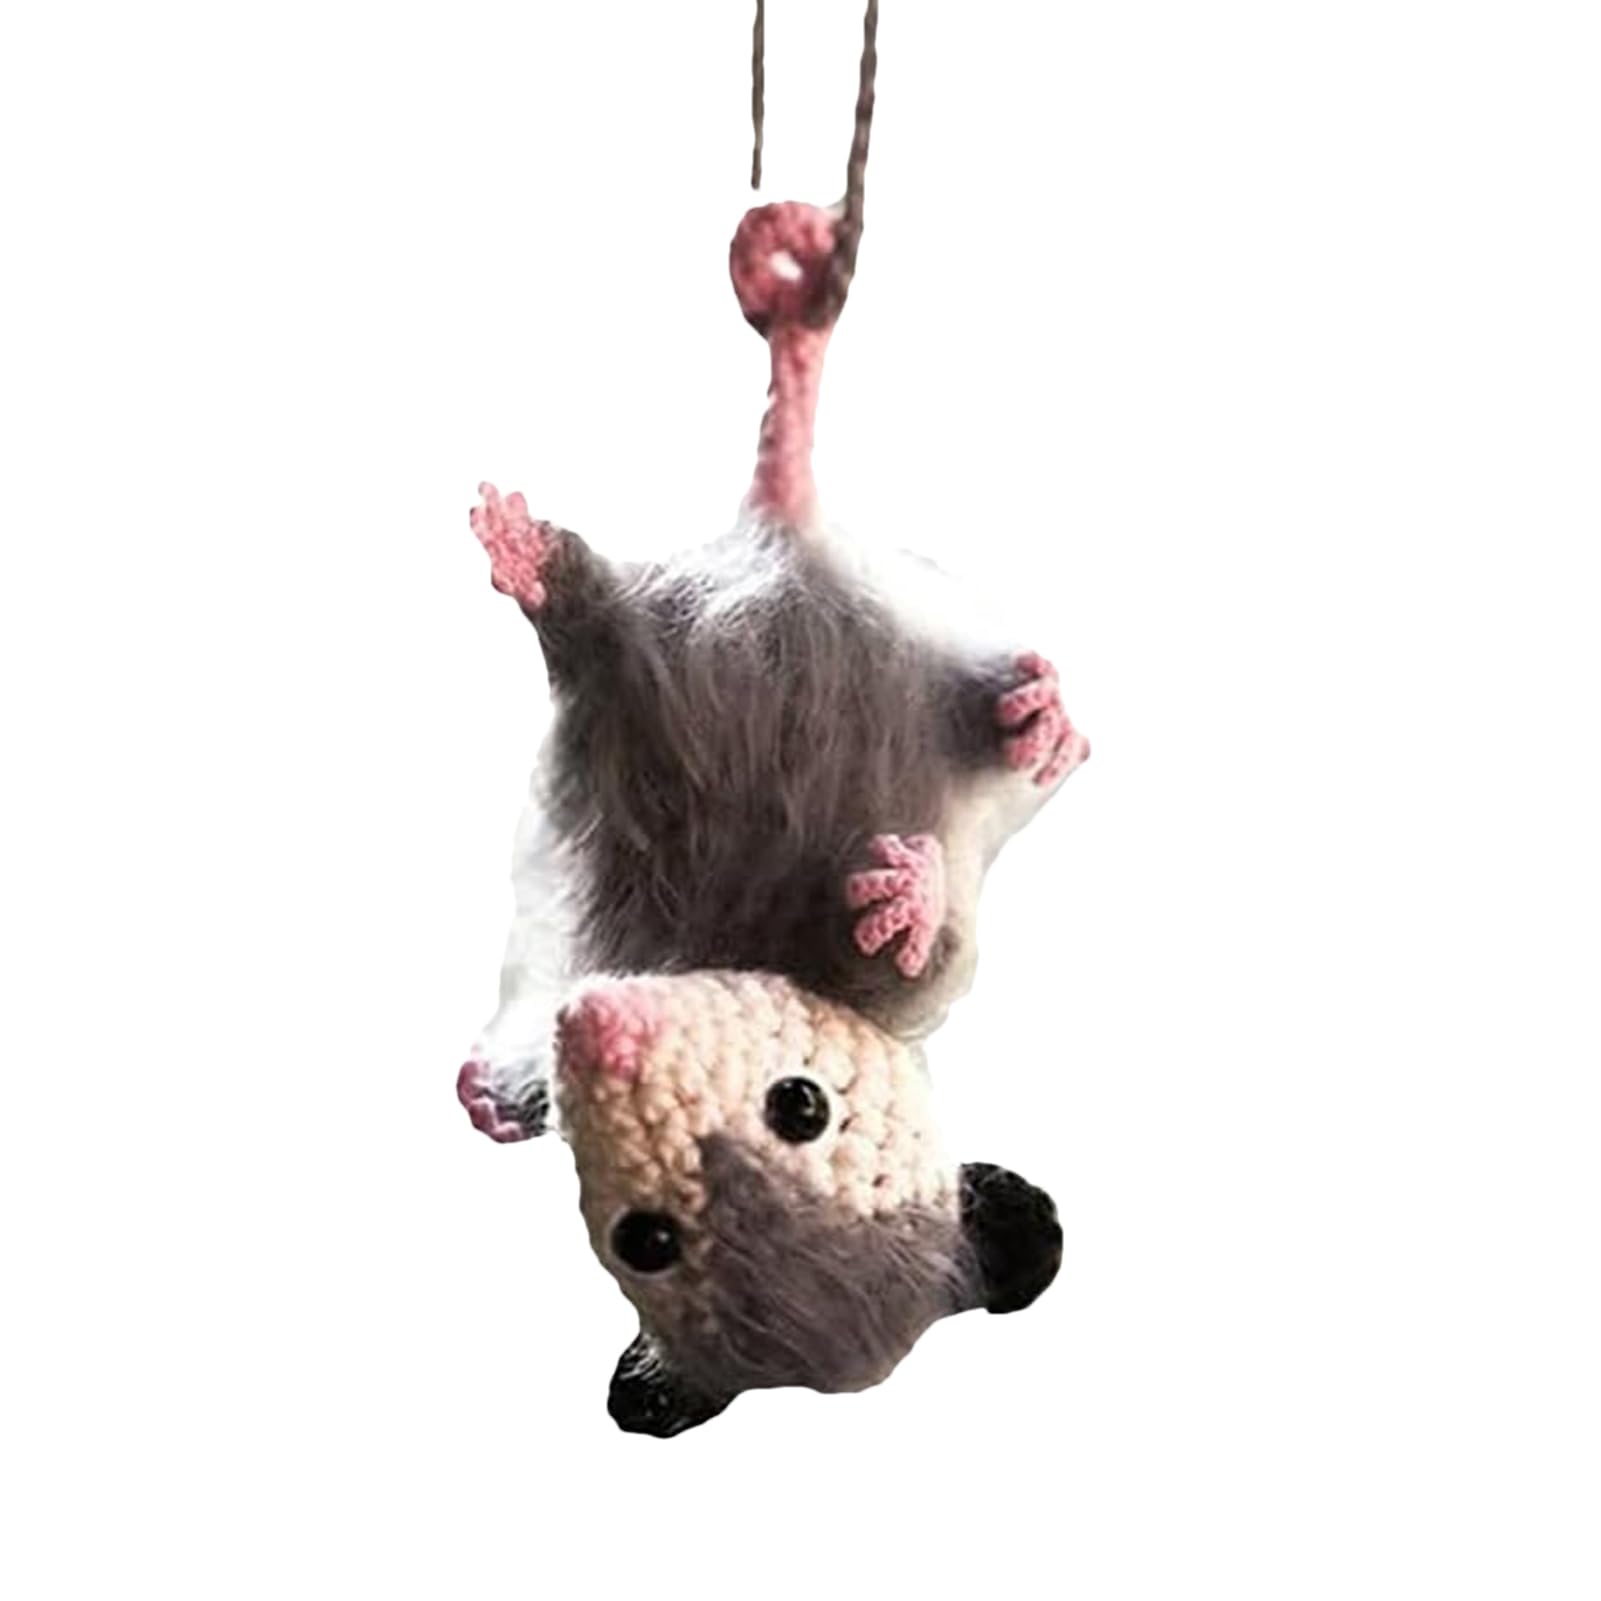 Rrlihjgu Auto-Innenanhänger-Dekoration,Opossum-Autoanhänger - Aufhängungs-Auto-Charme | Entzückende Opossum-Autodekoration – Auto-Accessoire, einzigartiges Rückspiegel-Zubehör, handgefertigt, von Rrlihjgu